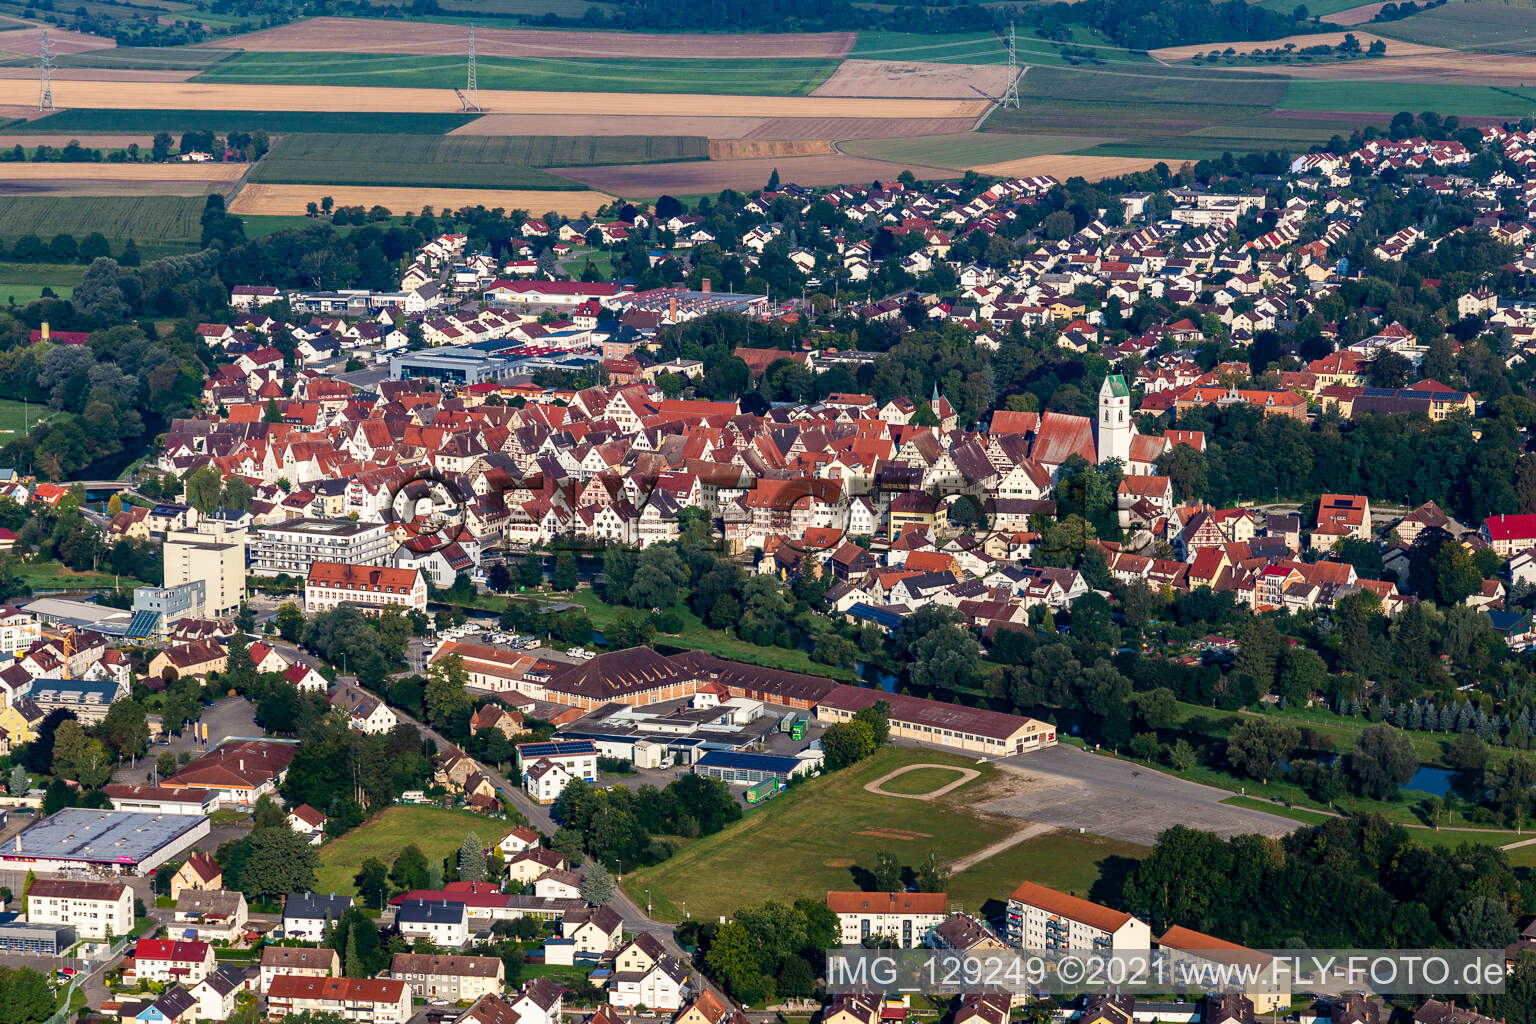 Luftbild von Ortskern am Uferbereich der Donau - Flußverlaufes in Riedlingen im Bundesland Baden-Württemberg, Deutschland